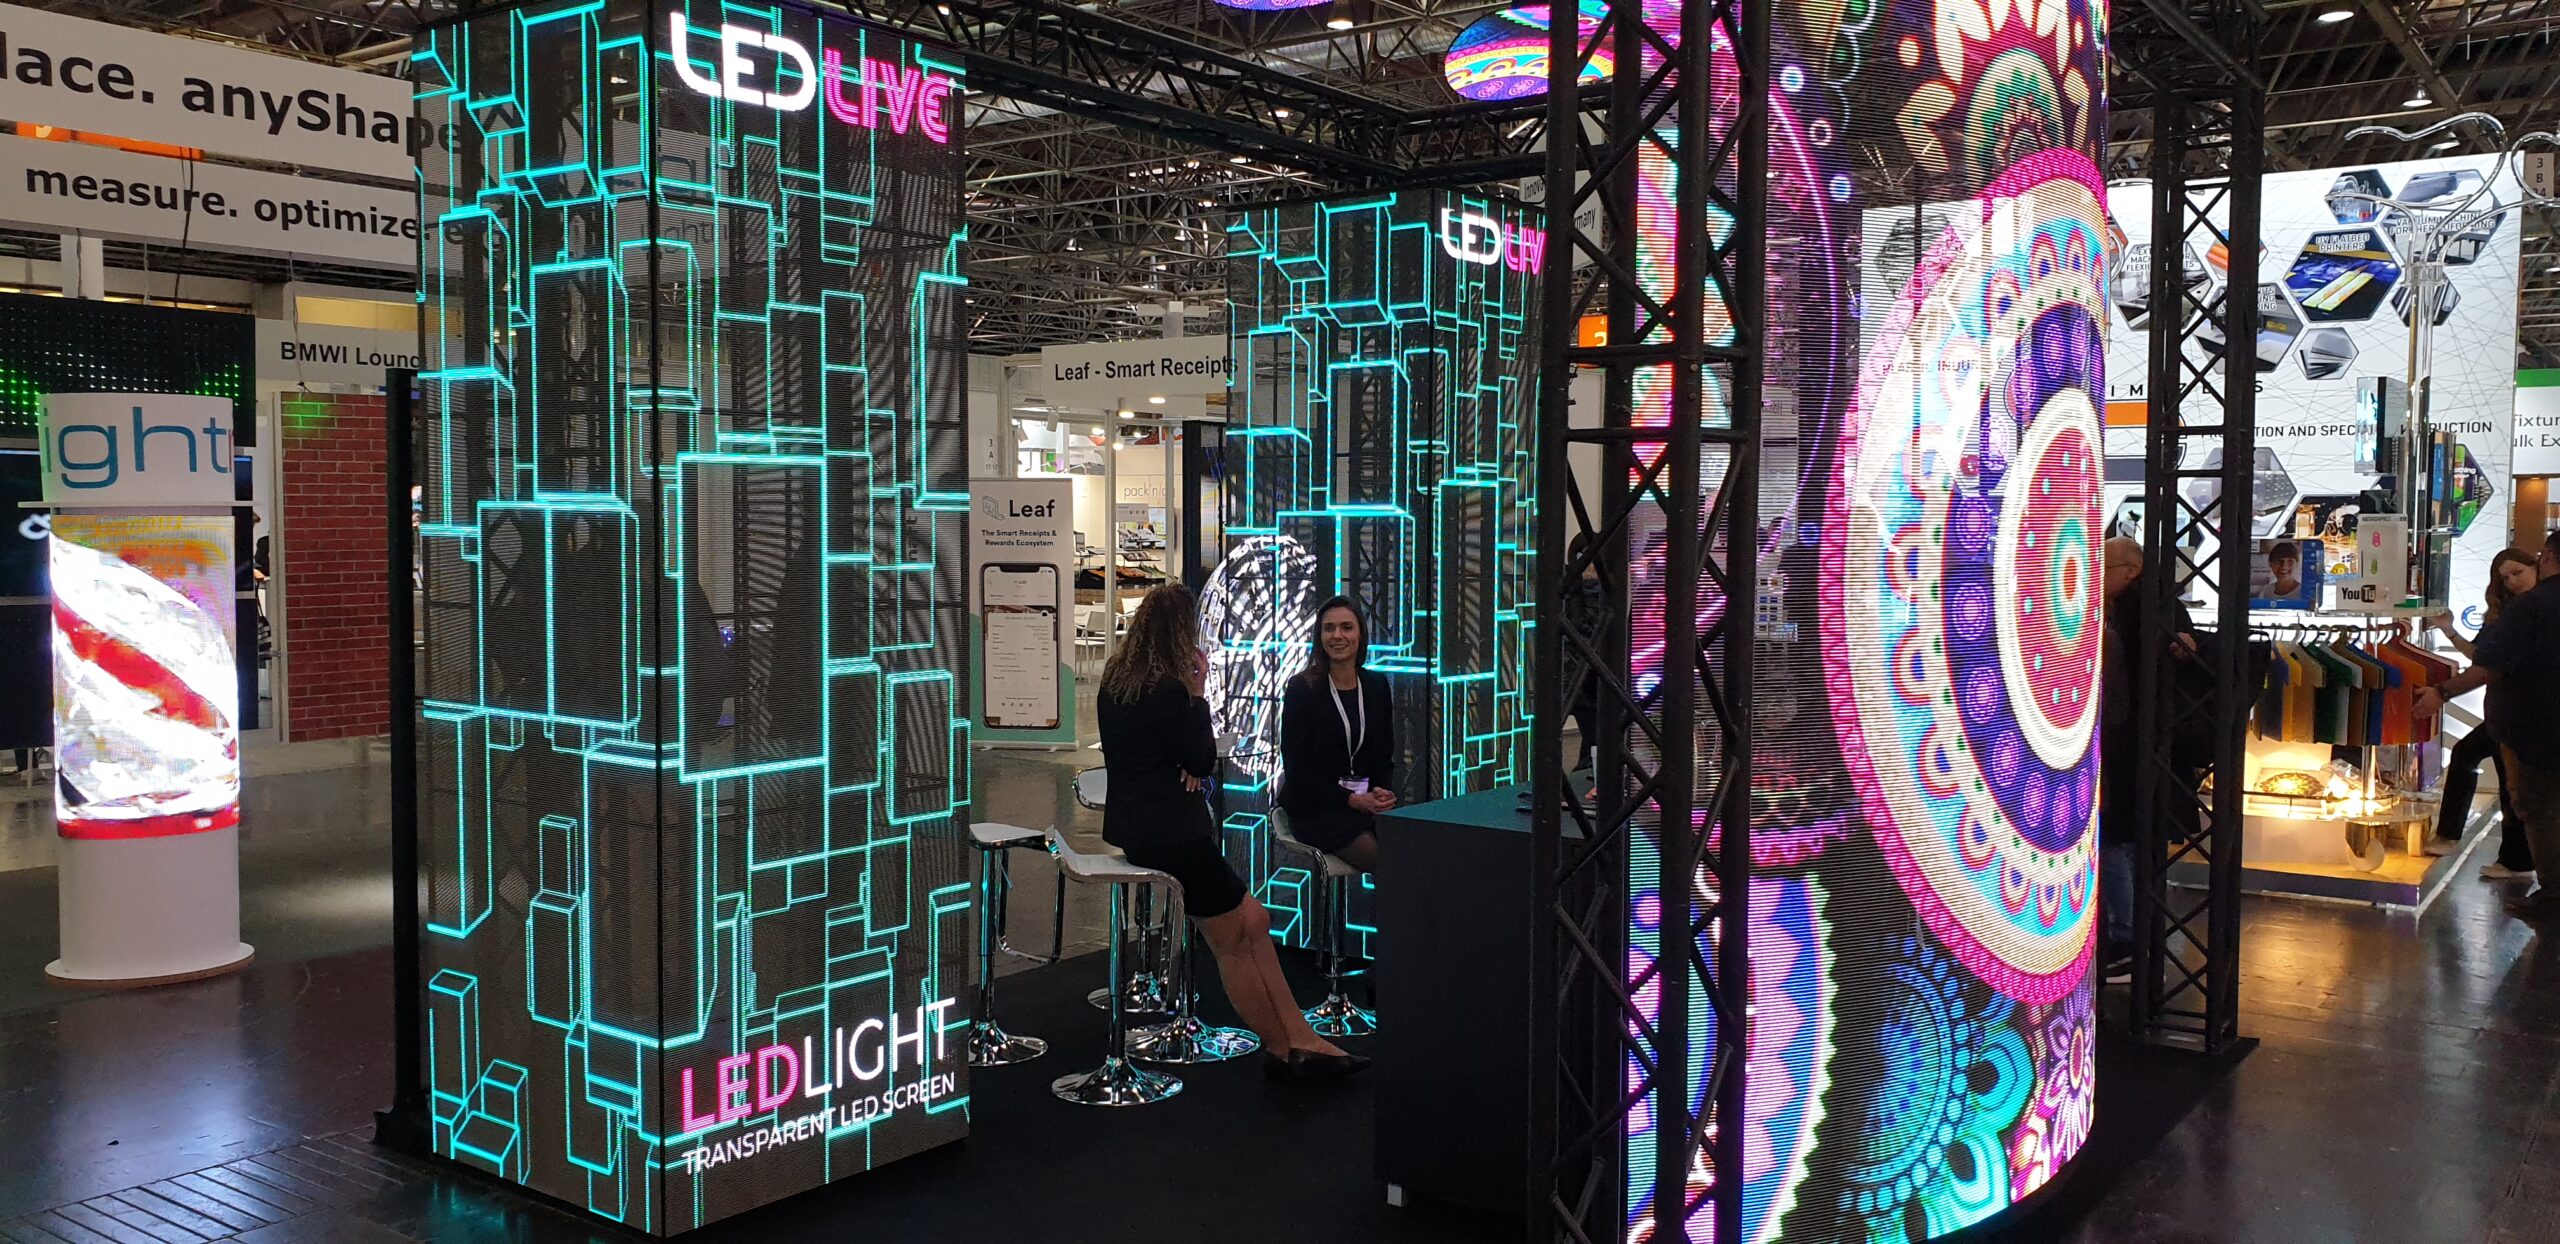 Stoisko ekspozycyjne zbudowane z transparentnych ekranów LED podczas targów EuroShop 2020 Düsseldorf